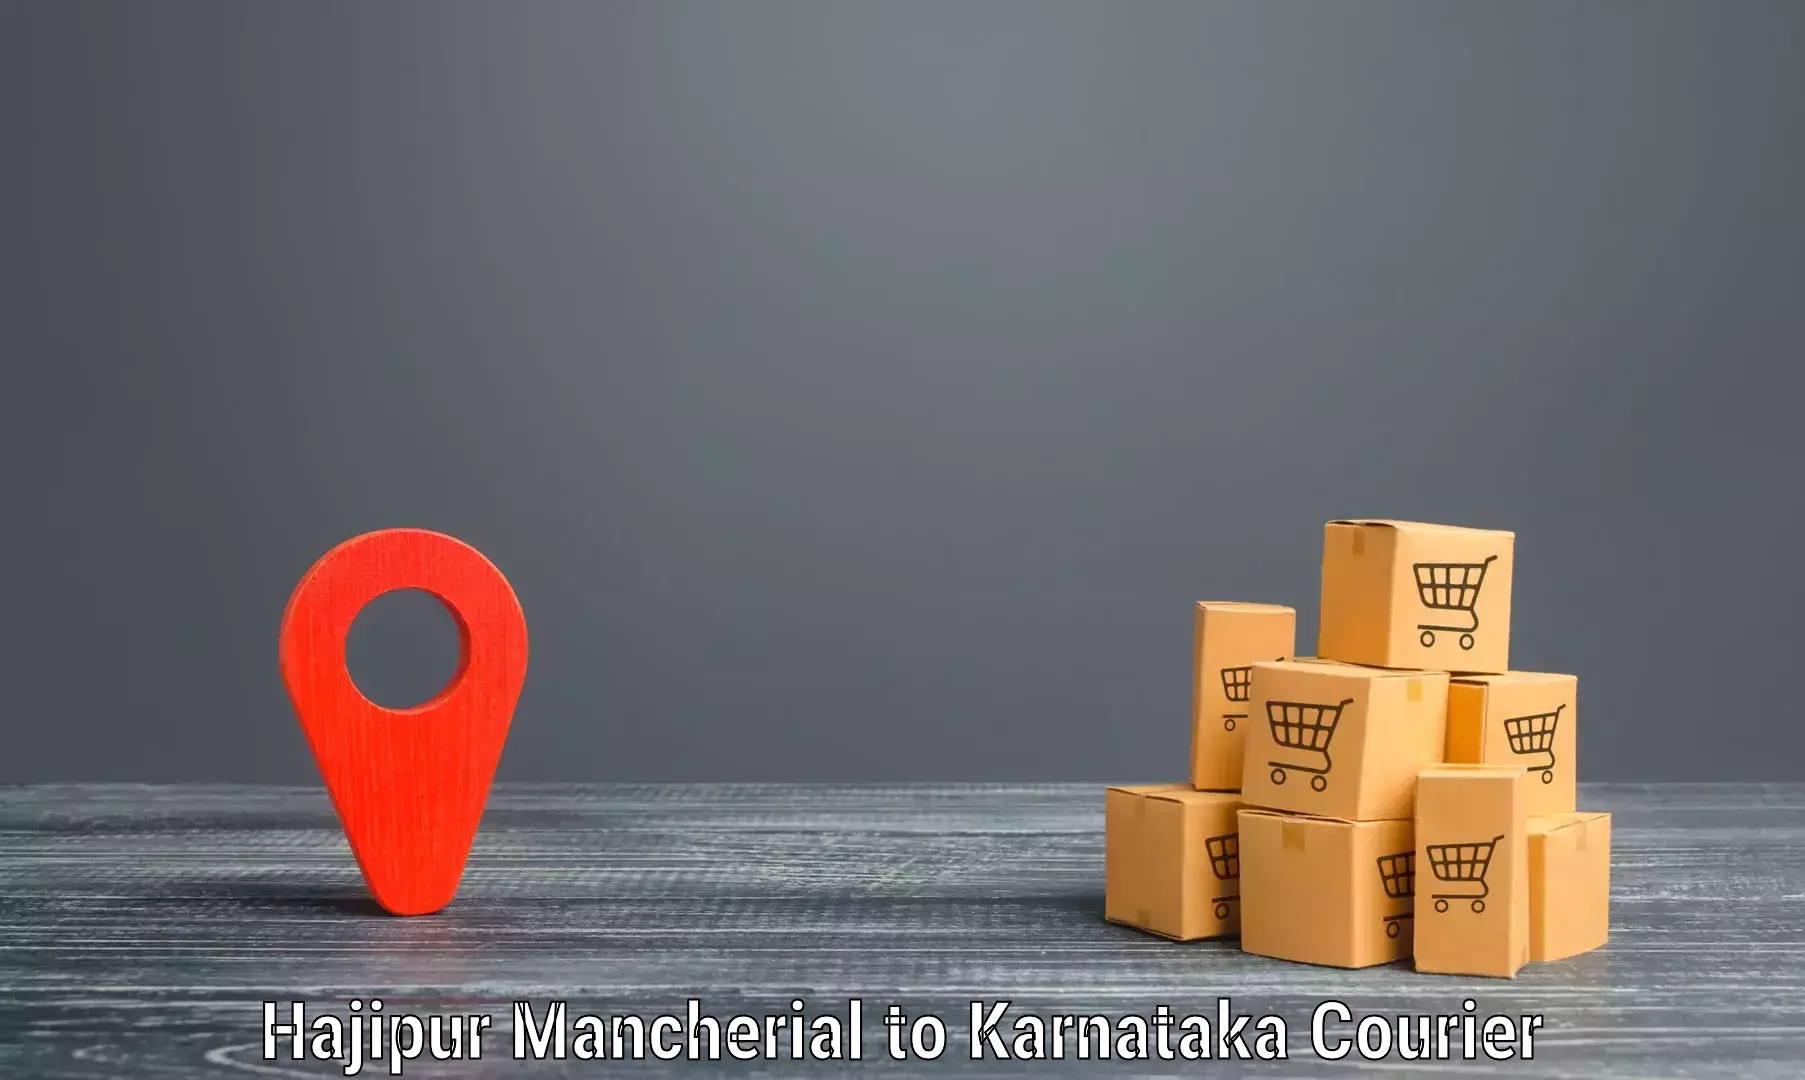 Express package transport Hajipur Mancherial to Karnataka